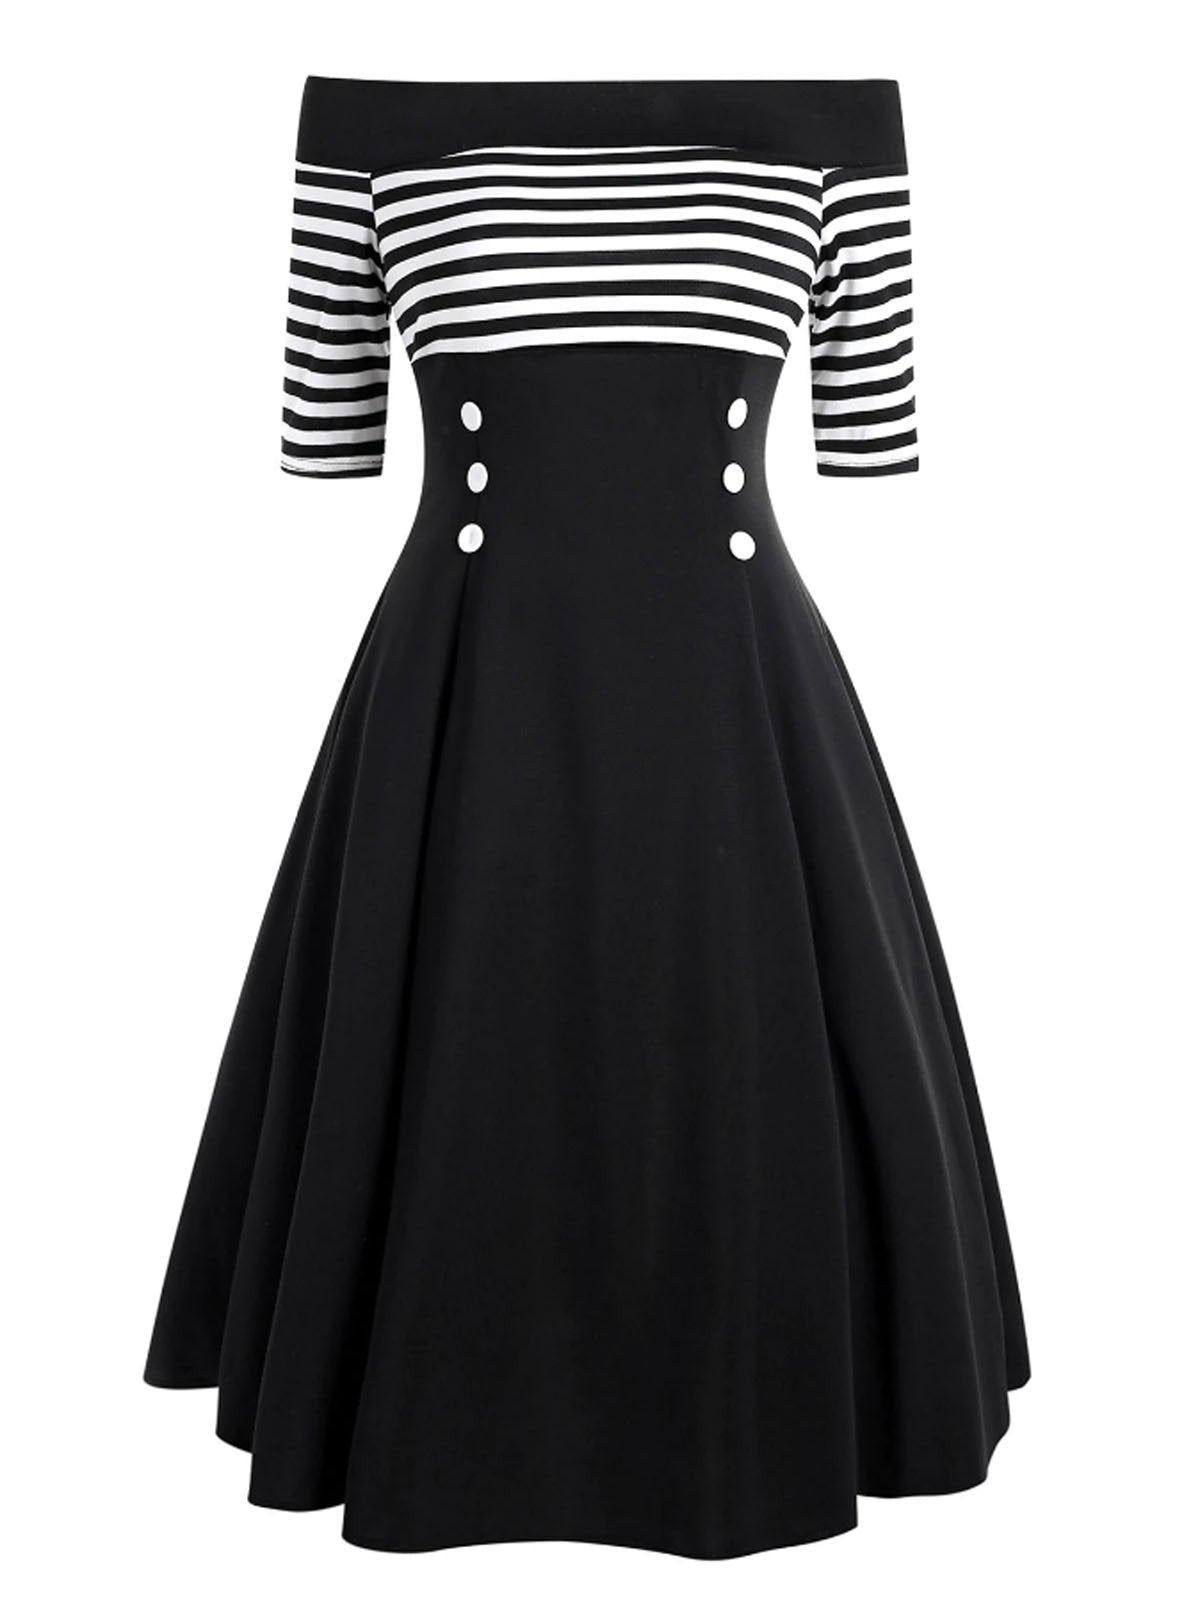 Schwarzes, schulterfreies Kleid aus den 1950er Jahren